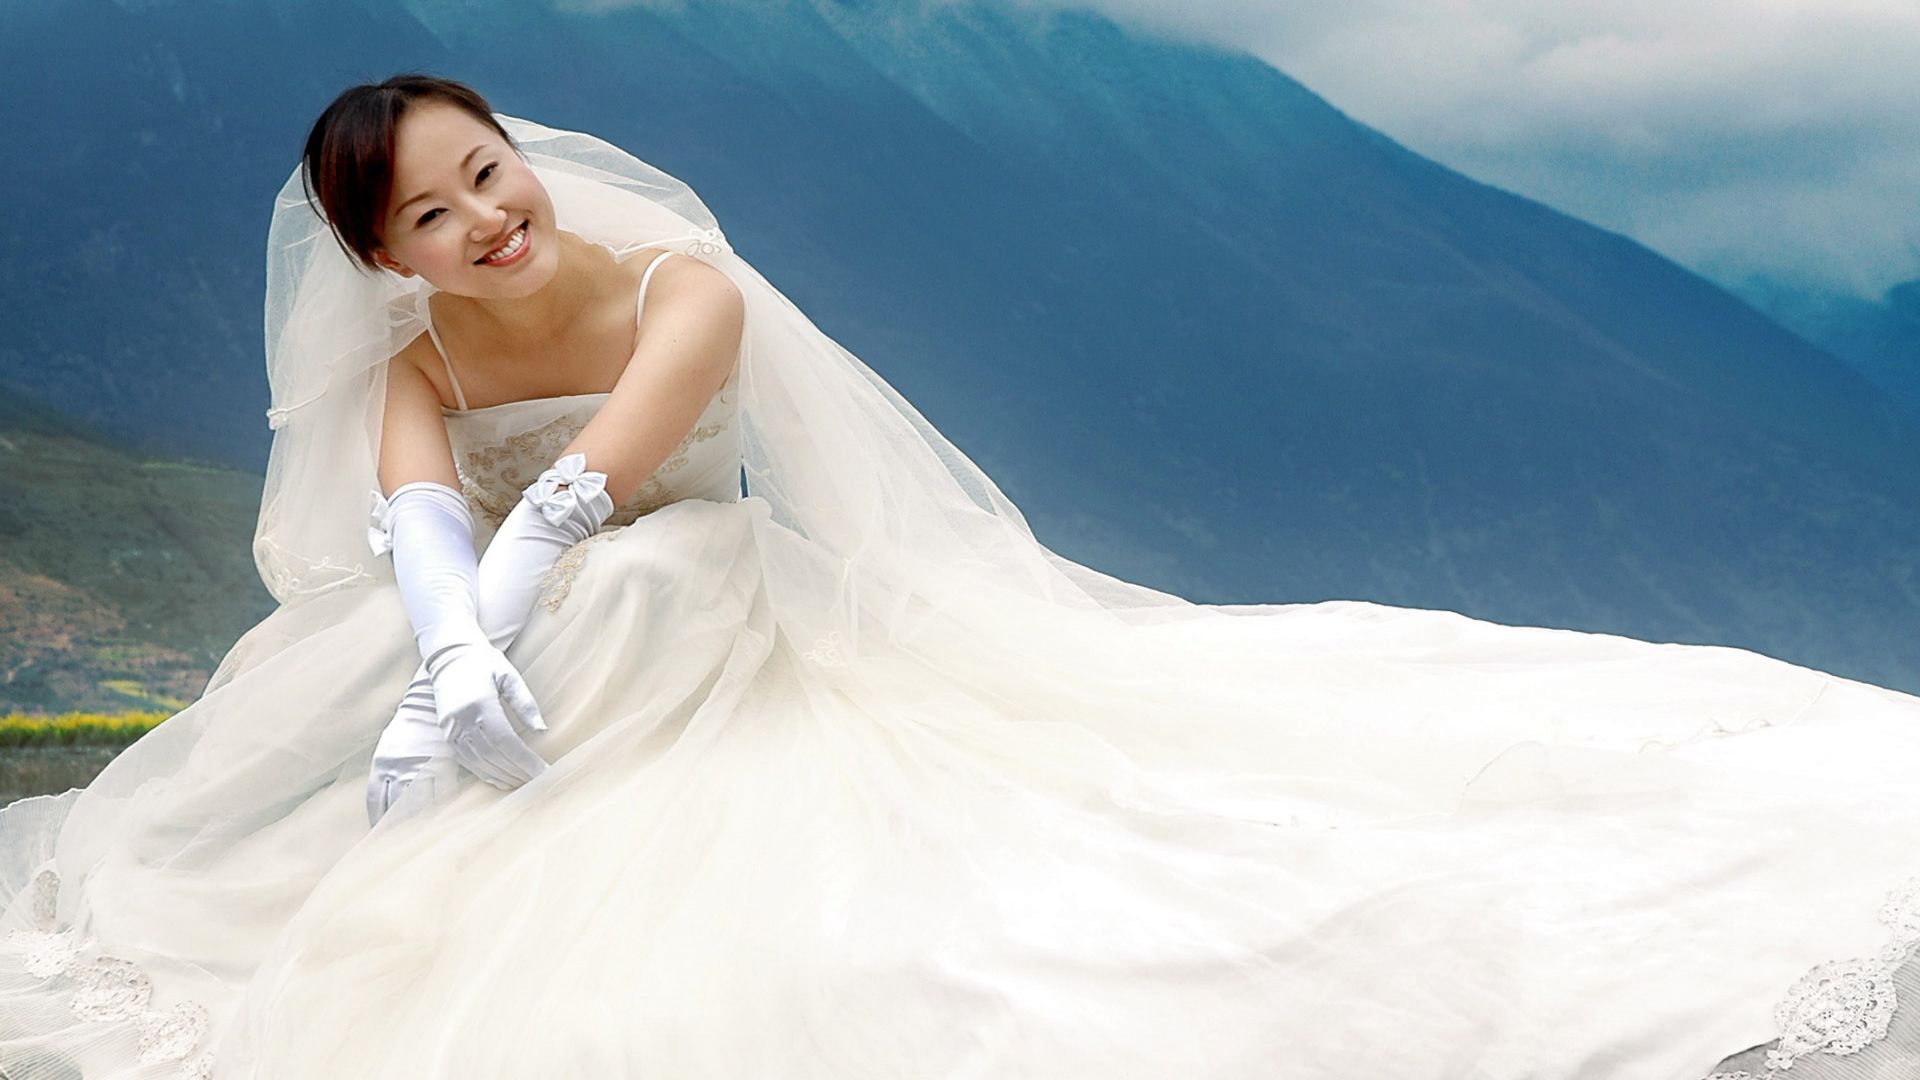 Hãy cùng ngắm nhìn bộ sưu tập áo cưới trắng Á Châu 2013 với các thiết kế tinh tế, đầy sang trọng và tôn lên vẻ đẹp thanh lịch của người phụ nữ. Chắc chắn bạn sẽ bị cuốn hút và cảm thấy như mình đang đứng giữa chuỗi các sự kiện hoành tráng cùng với vẻ đẹp tuyệt vời này.